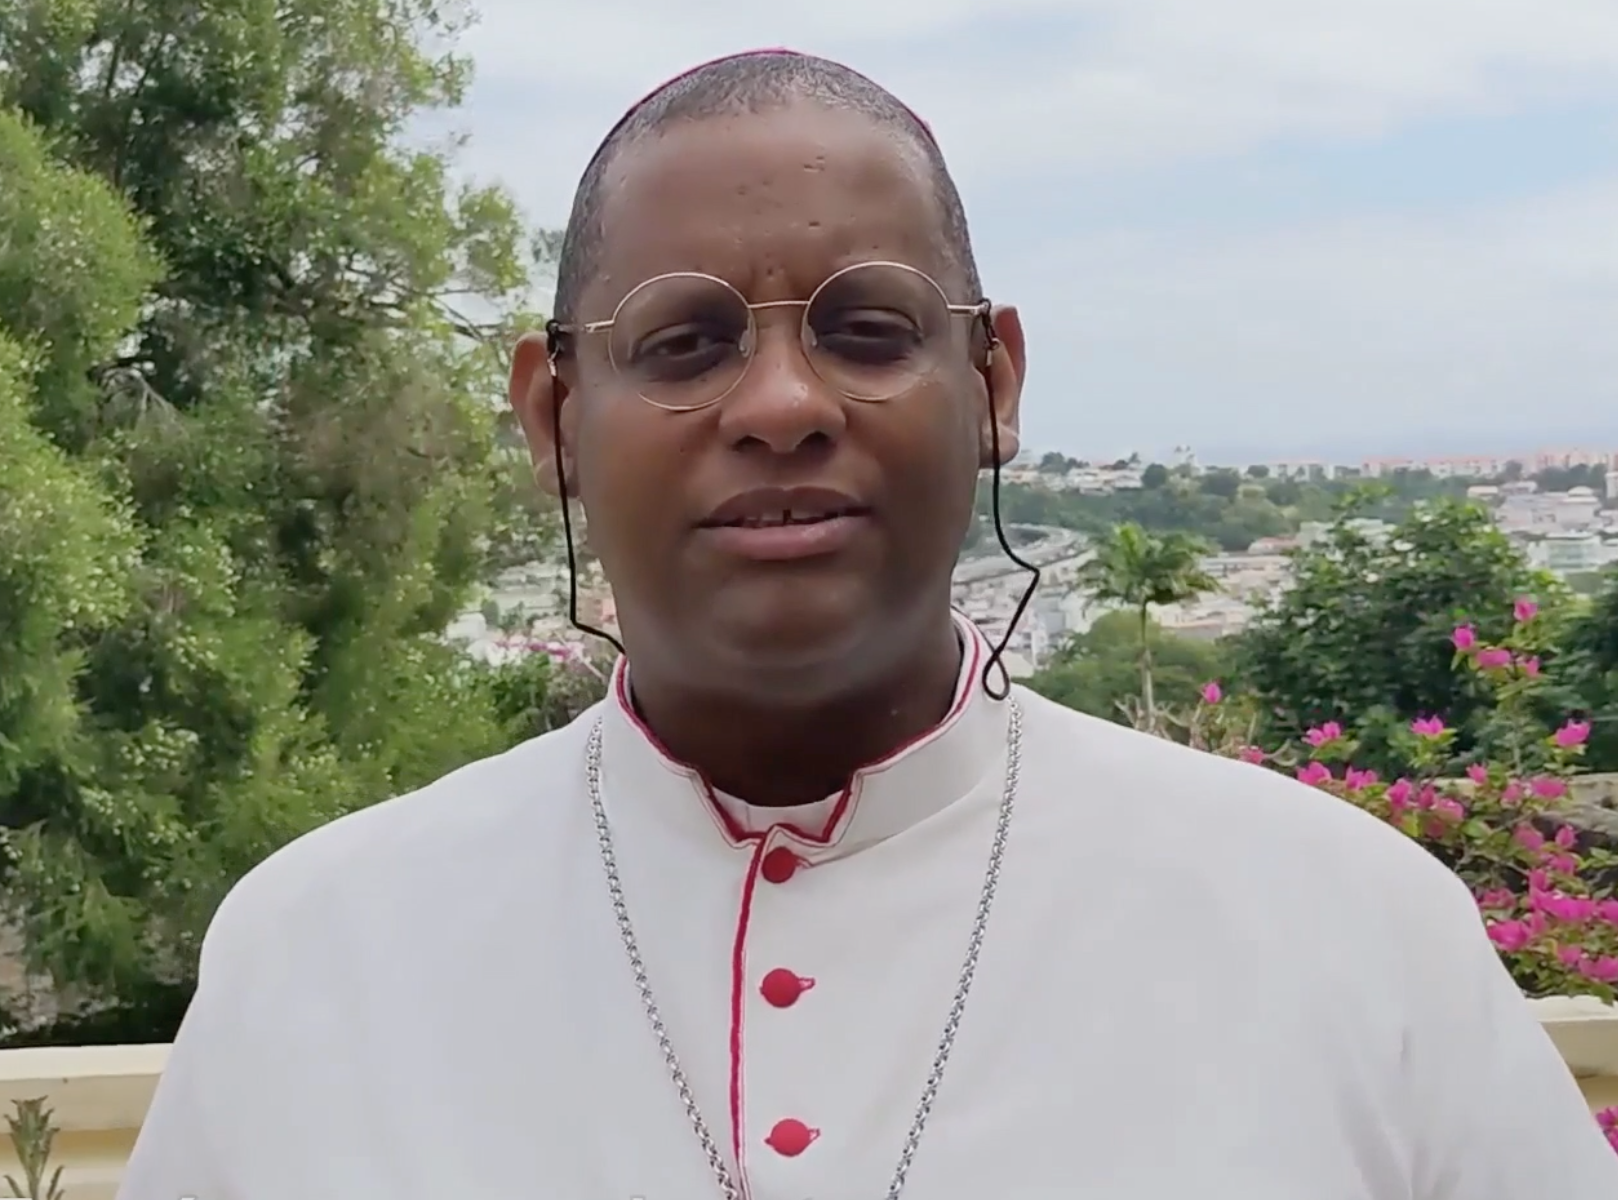     Mgr Macaire réagit après la mise en examen d’un prêtre du diocèse pour viol sur mineure

